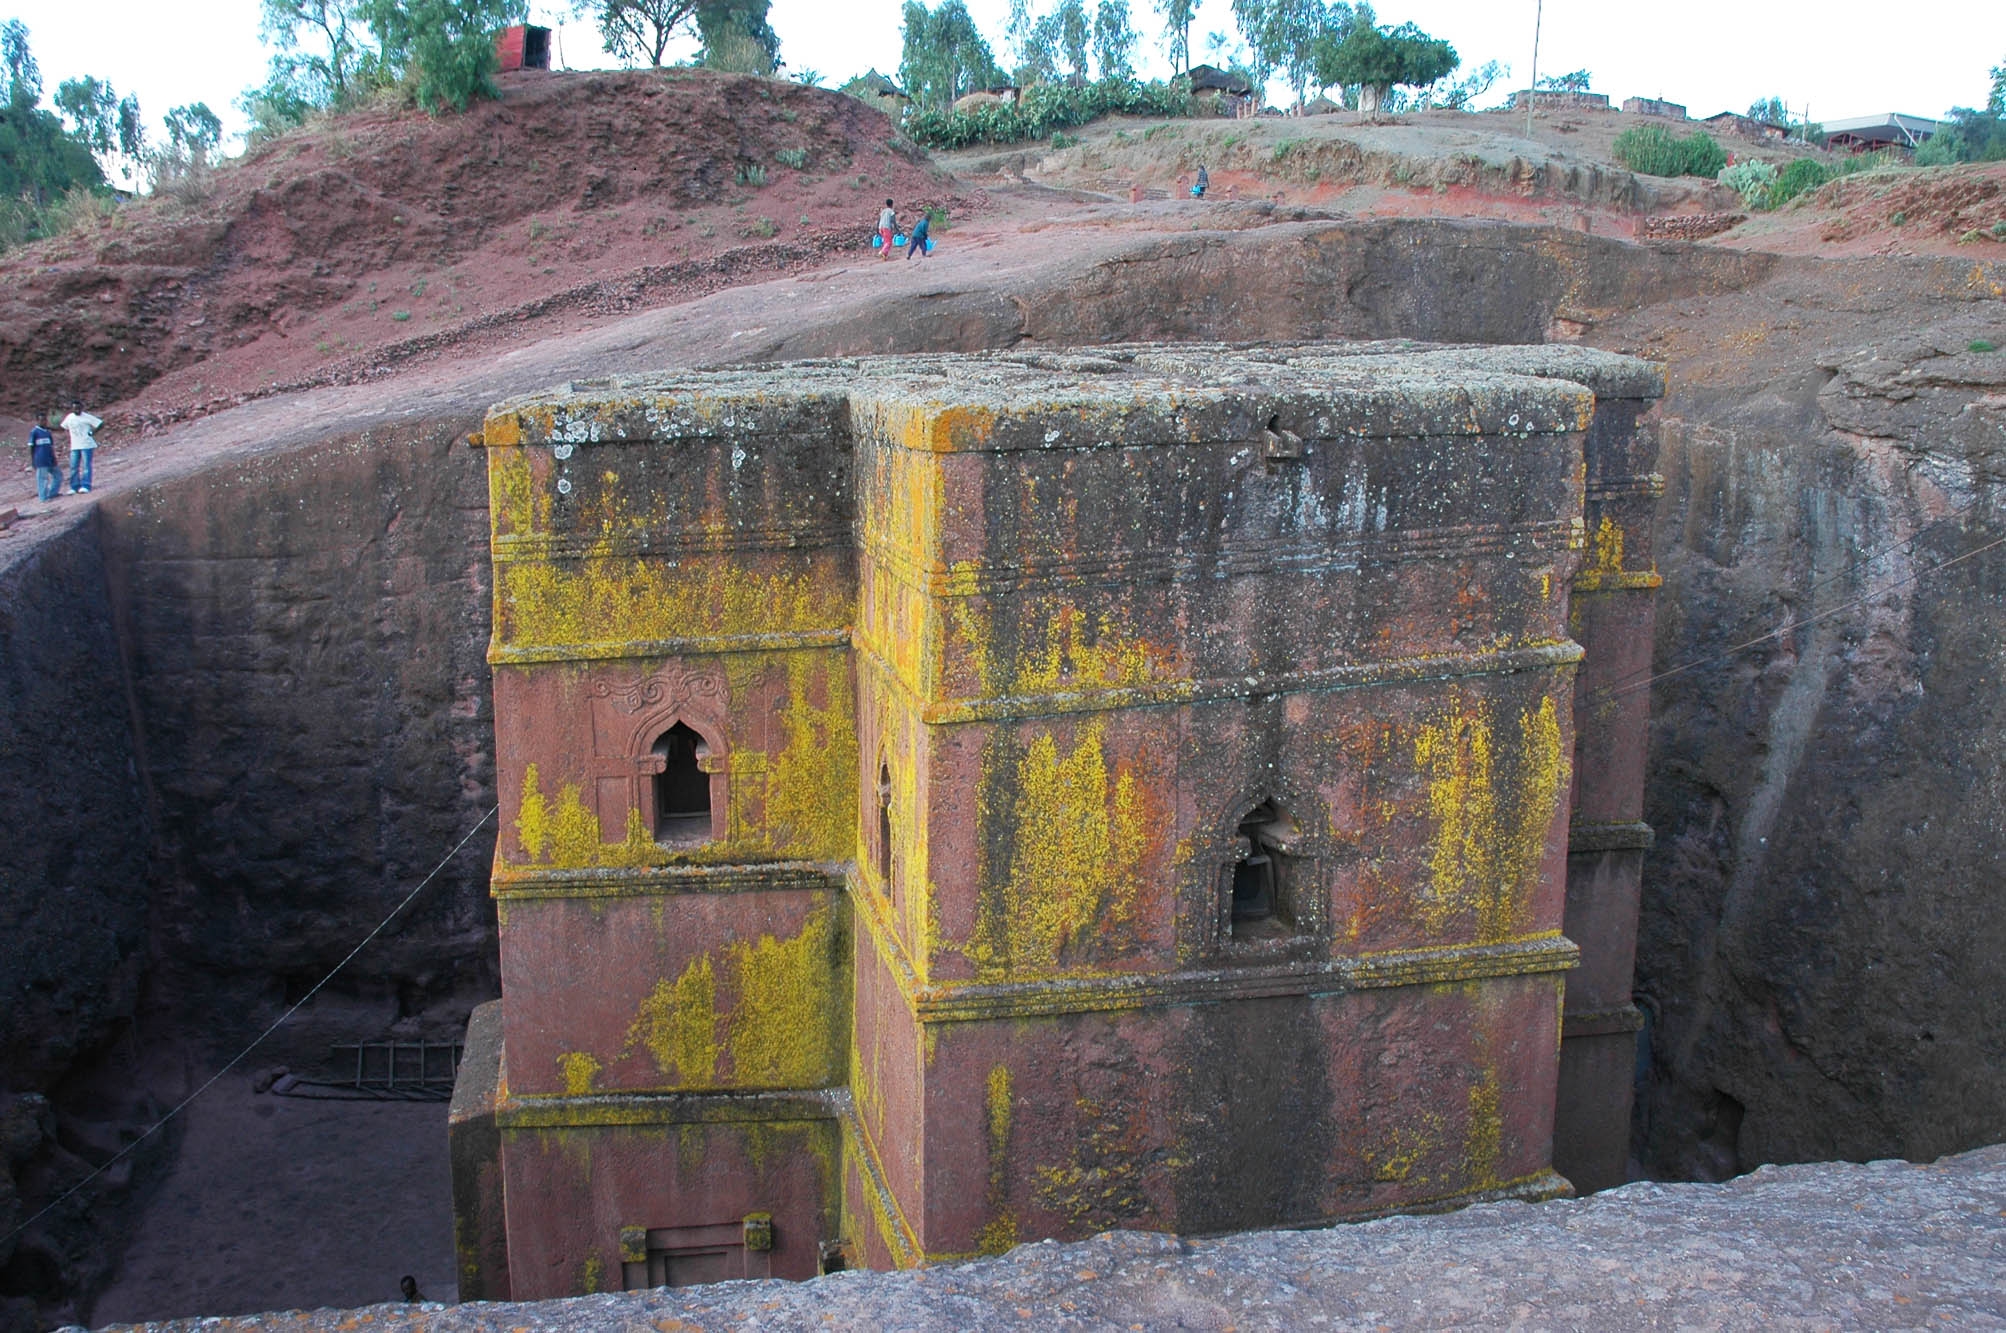 Lalibela (Ethiopie). L’église Beta Giyorgis, comme les dix autres églises monolithes de ce site, a été creusée dans des anciennes scories basaltiques consolidées. Cliché L. Bruxelles/Inrap et CFEE